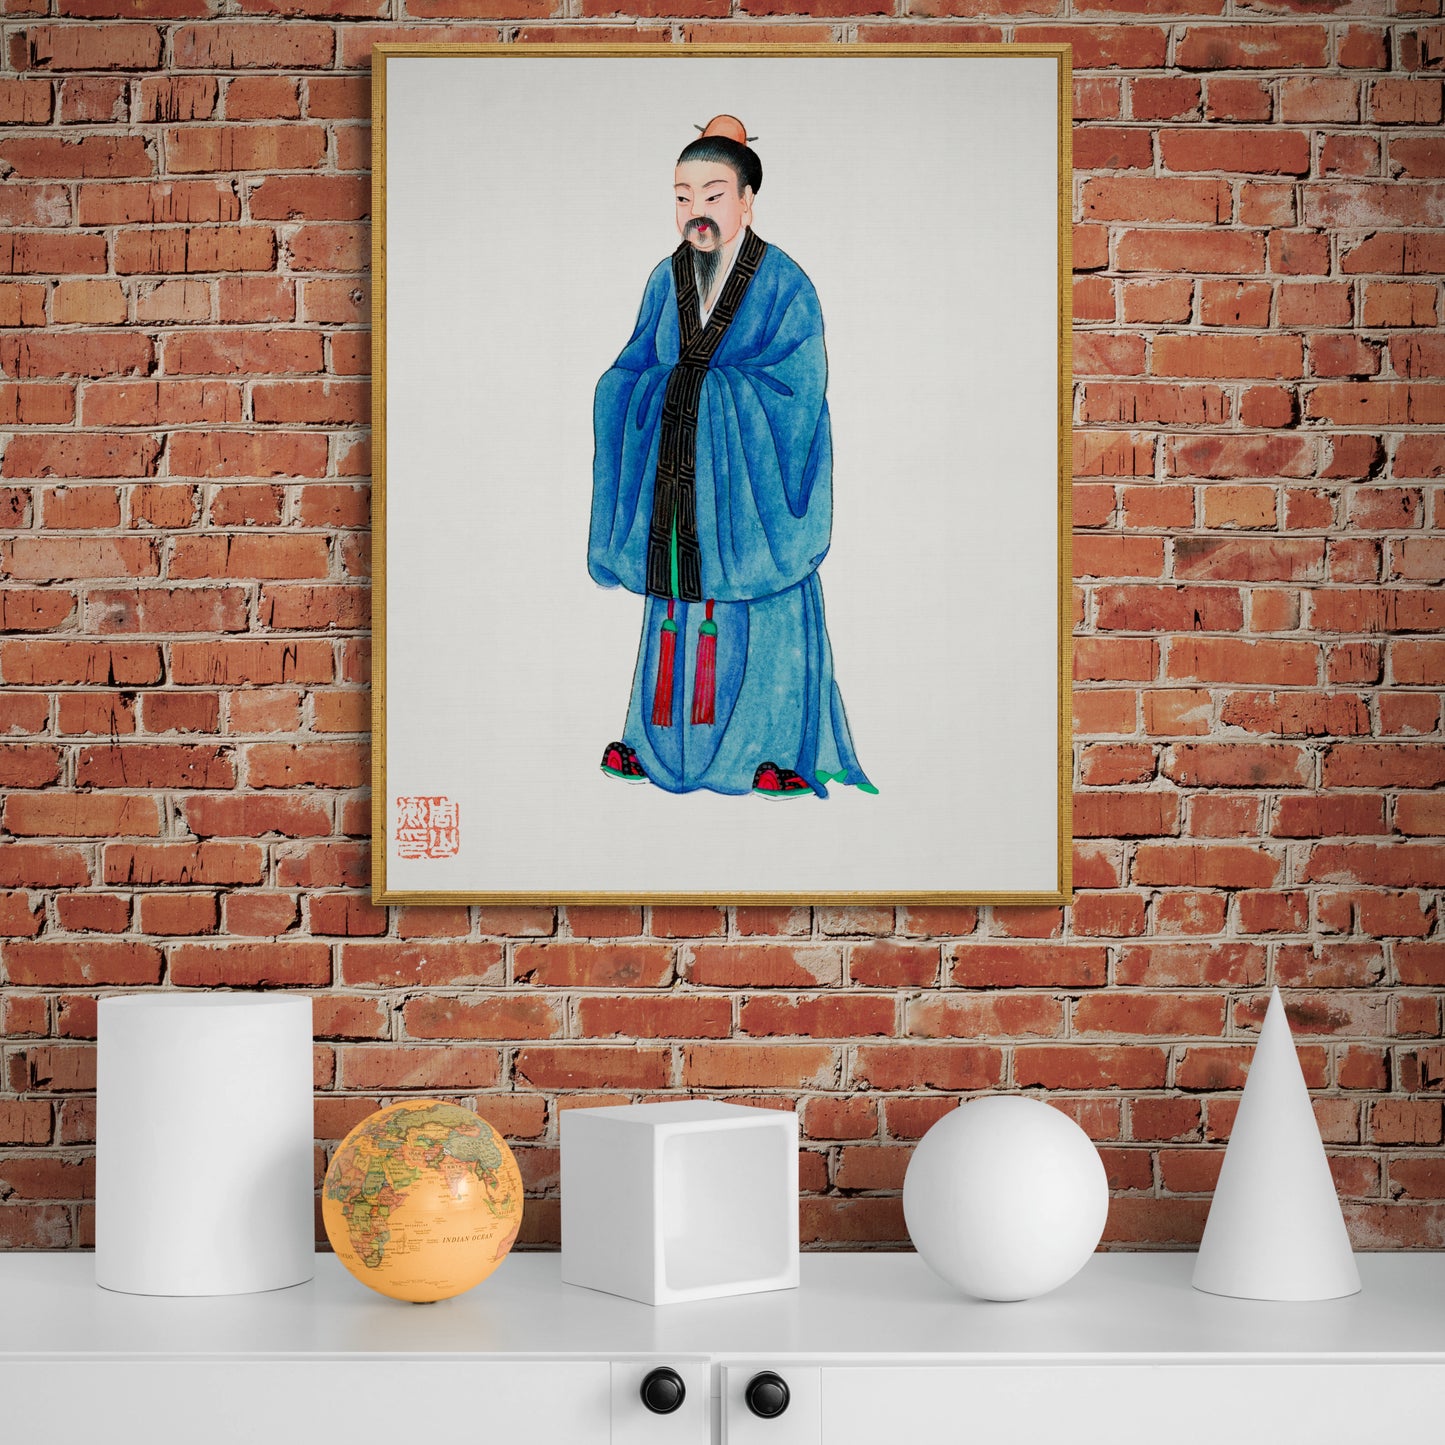 Vintage Chinese Priest Costume Illustration